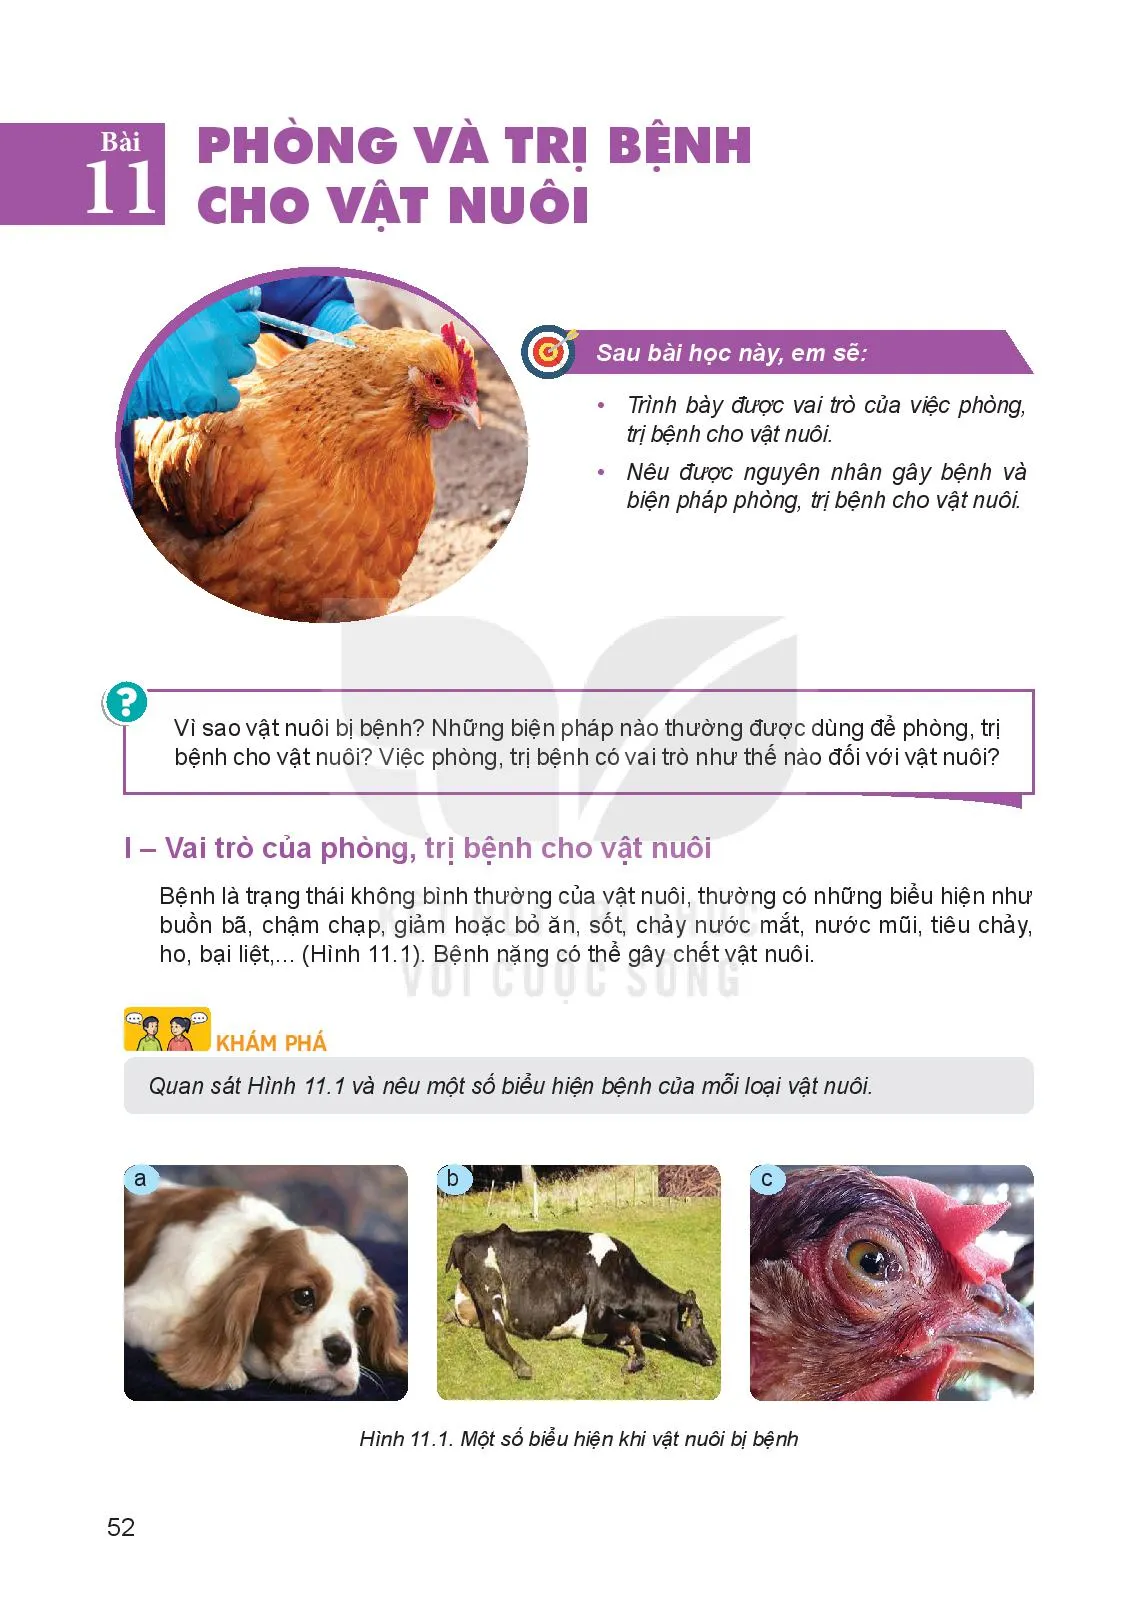 Bài 11. Phòng và trị bệnh cho vật nuôi